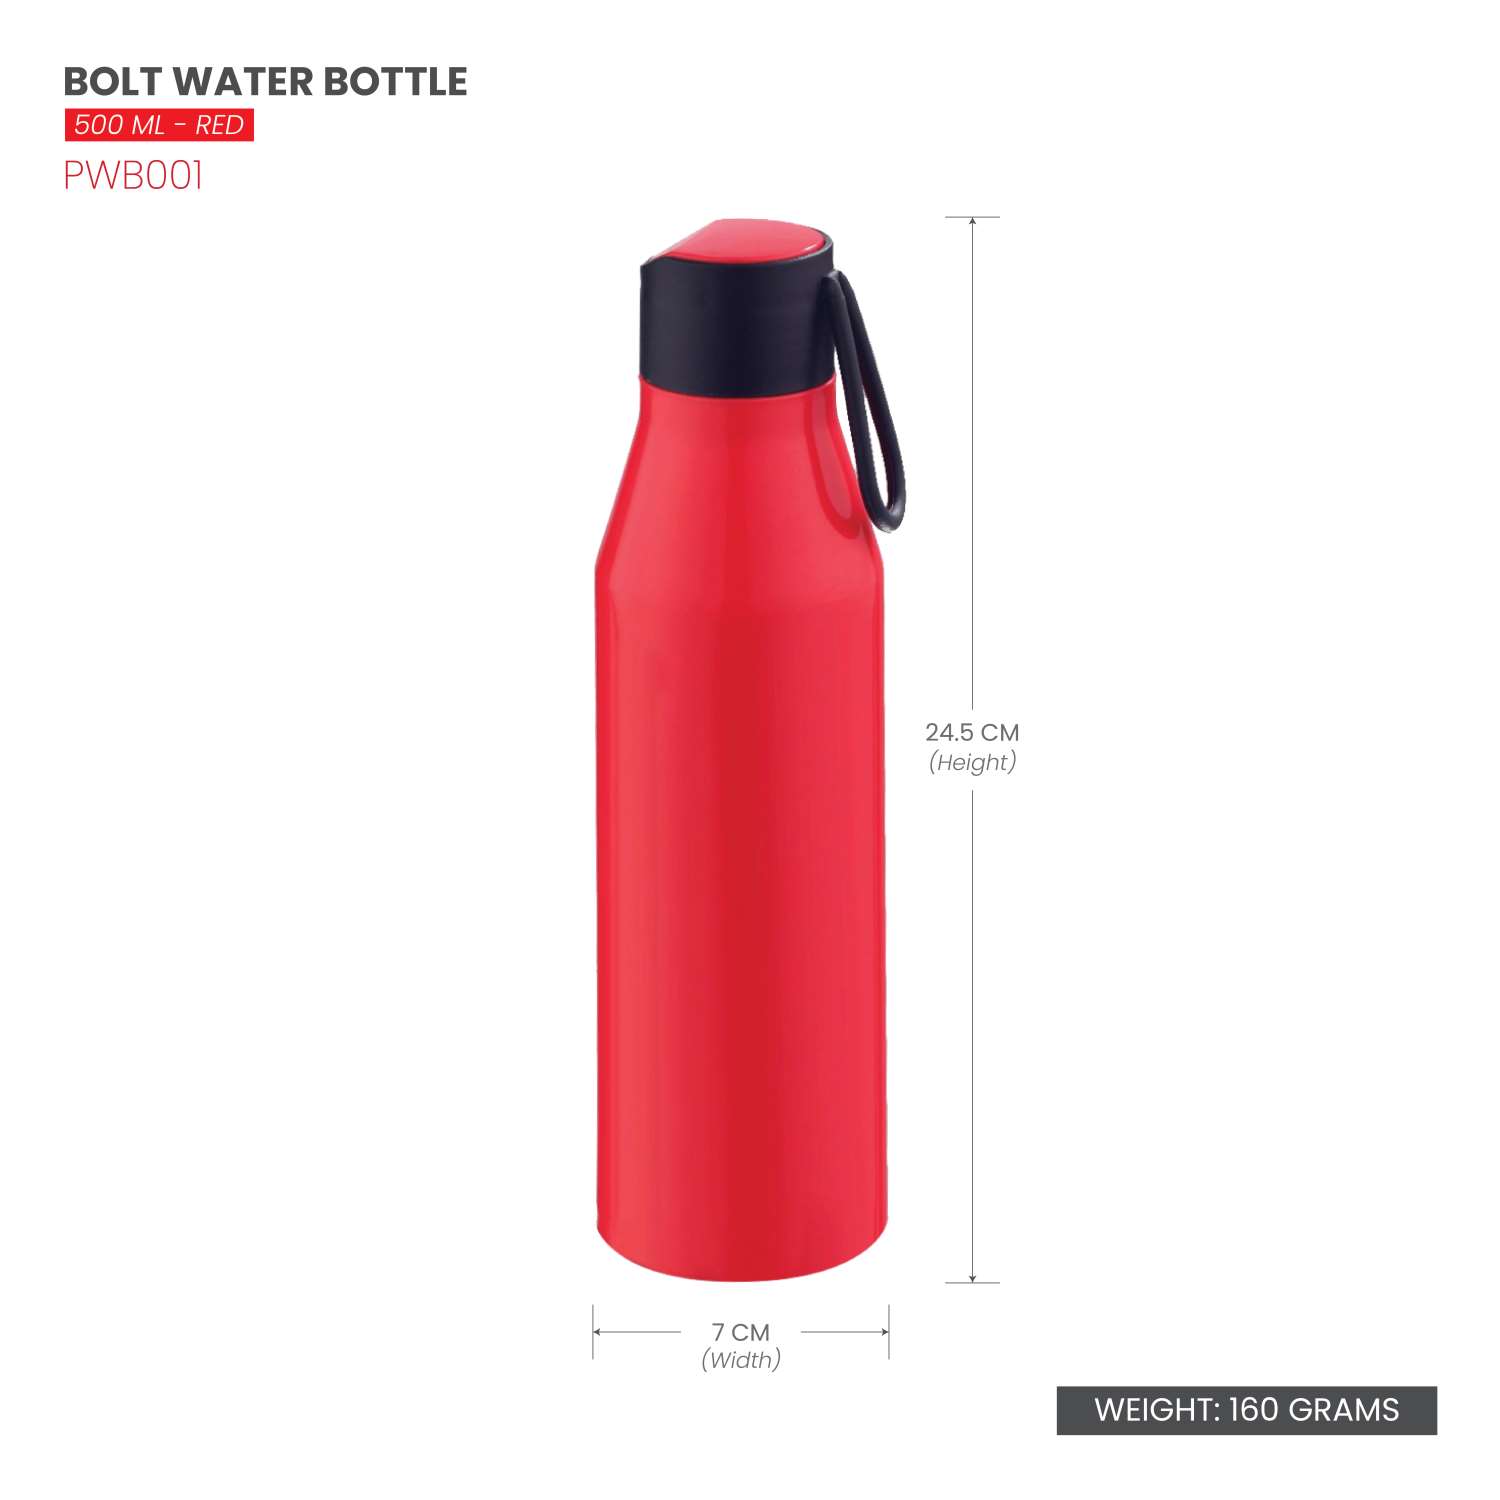 Selvel Bolt Plastic Water Bottle Red 500Ml